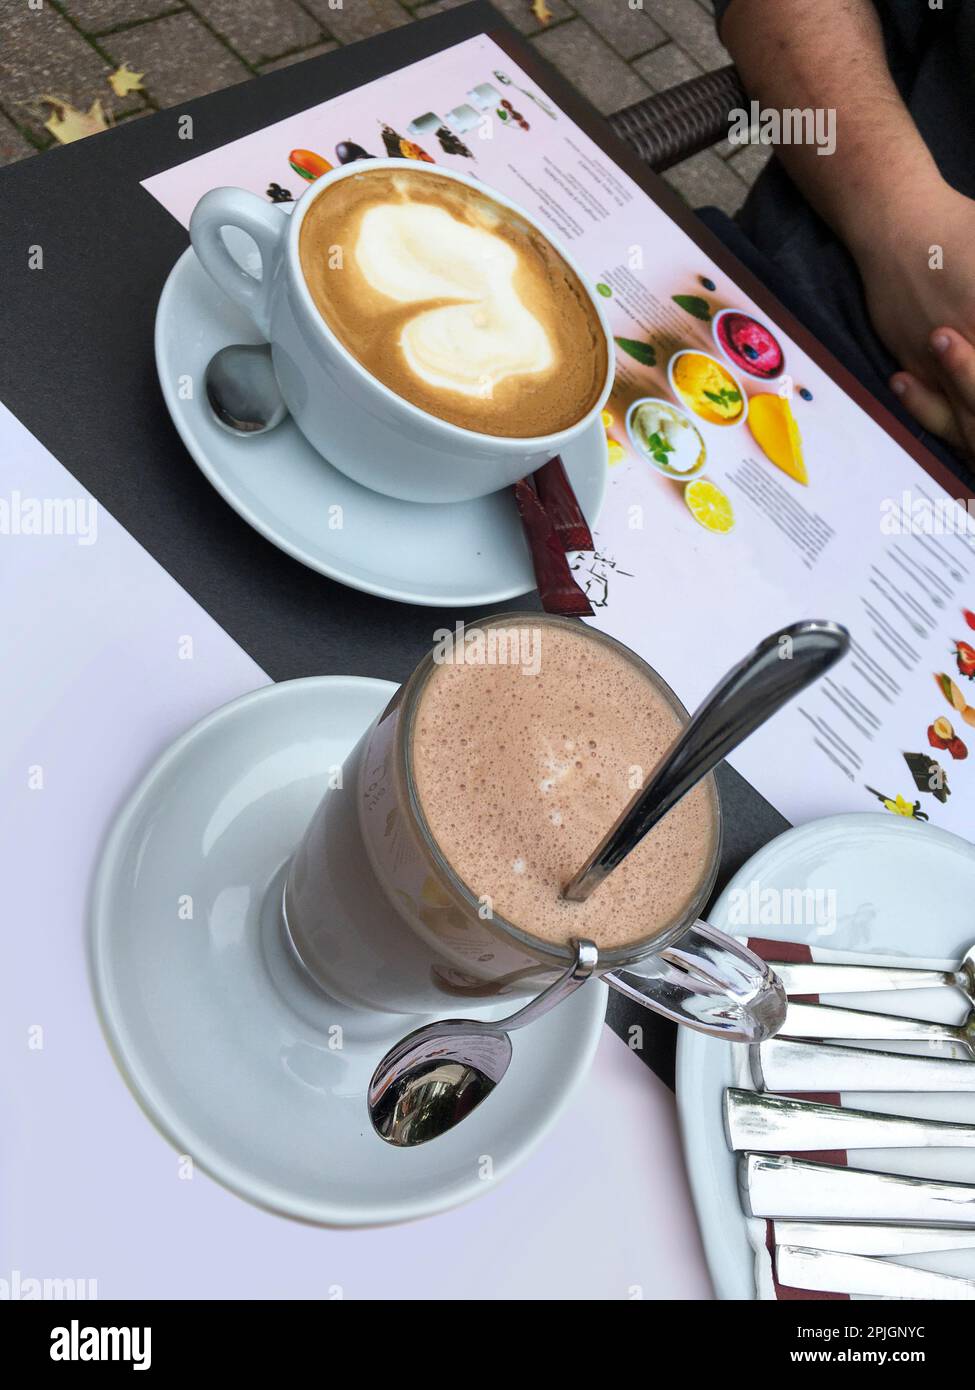 Eine Tasse Cappucino und ein Glas heiße Schokolade auf dem Tisch Stock Photo